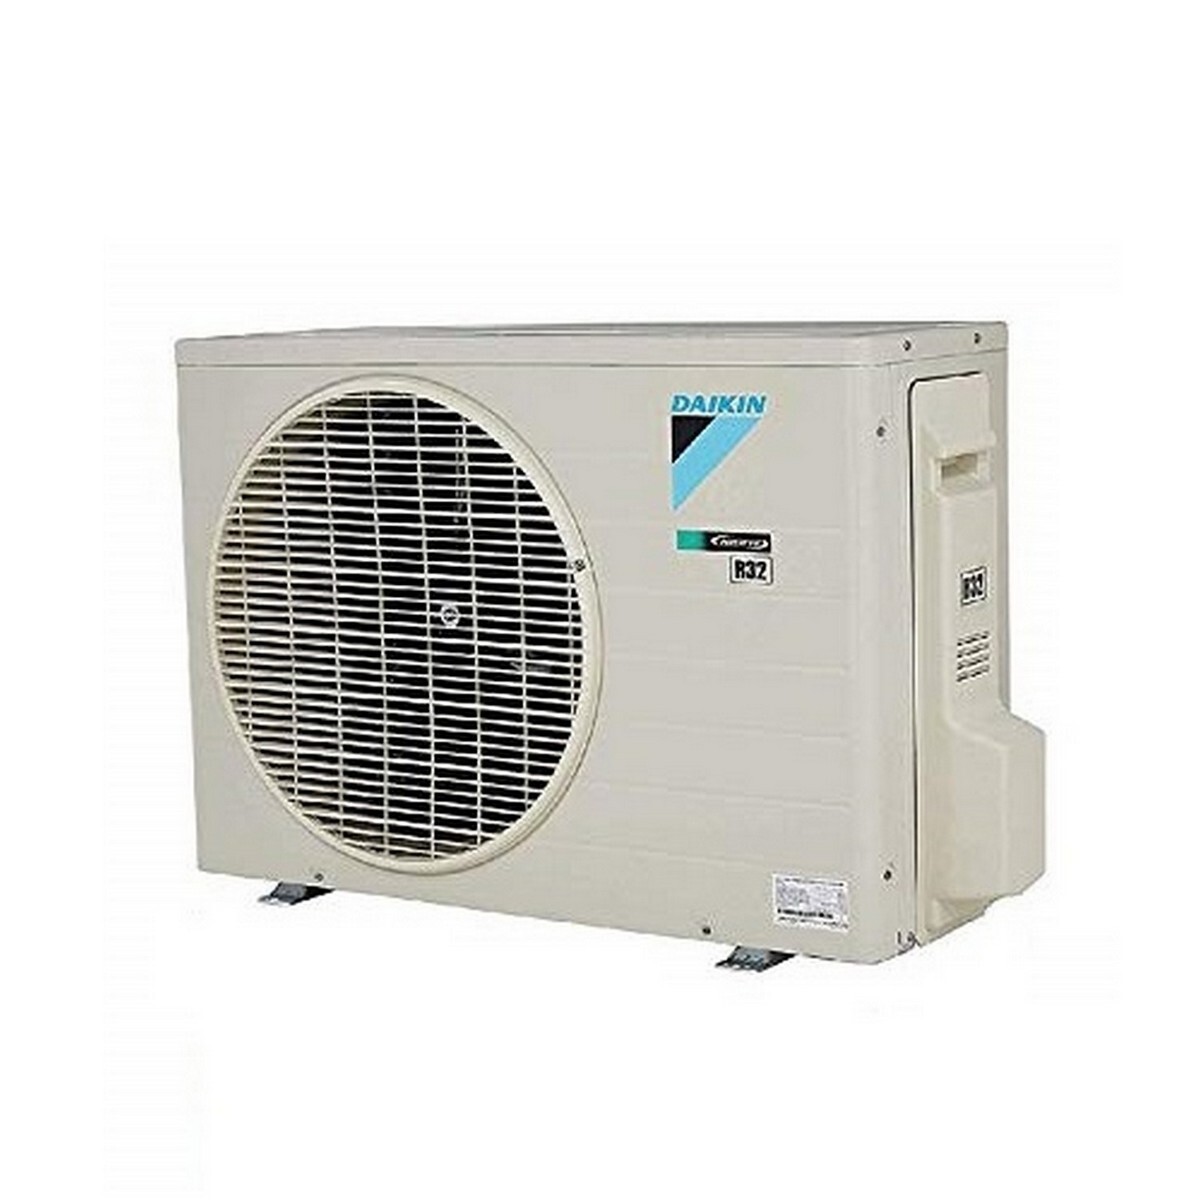 Daikin Inverter Air Conditioner FTKY50UV16V 1.5 Ton 3 Star